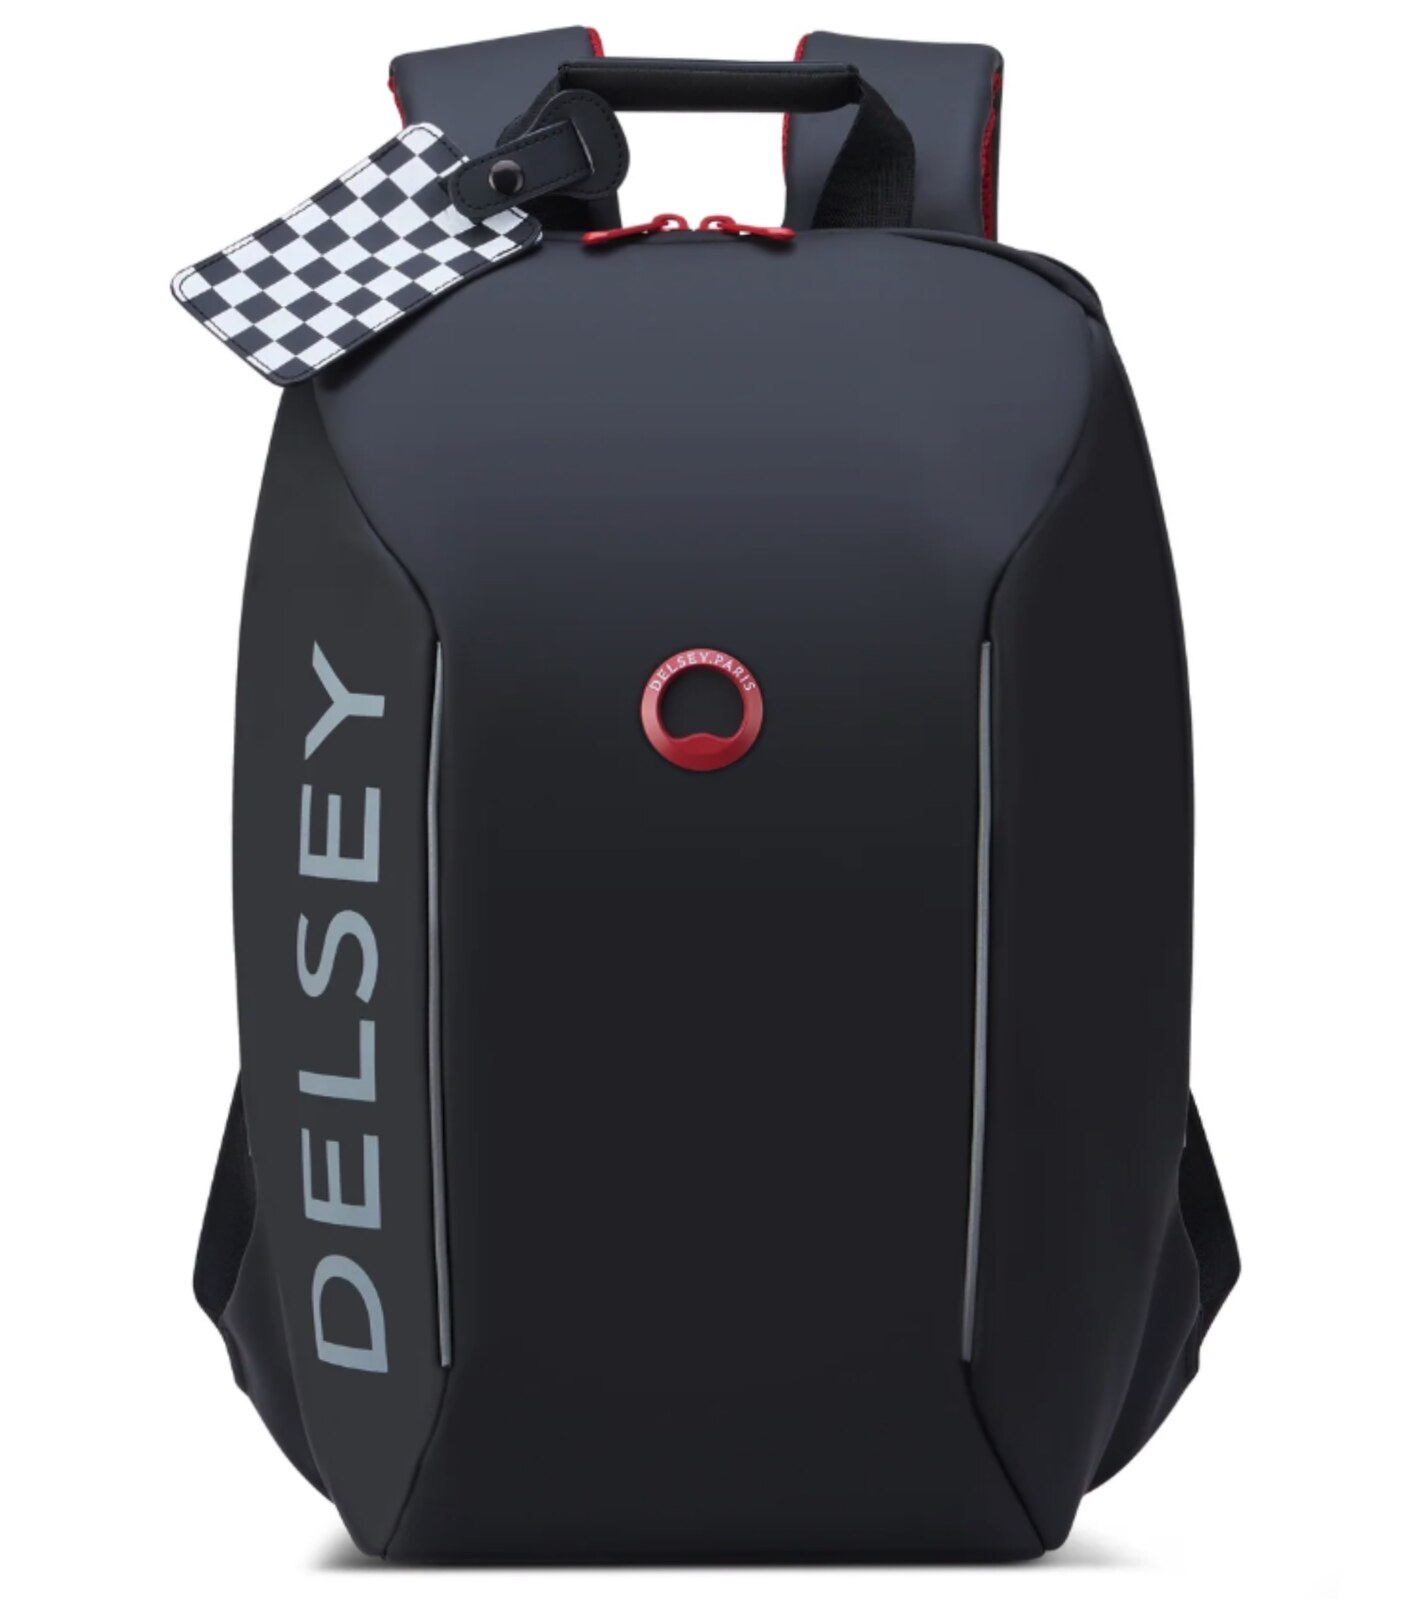 Delsey Parvis Plus Laptop Bag Grey | Delsey Briefcase | multmultas.com.br